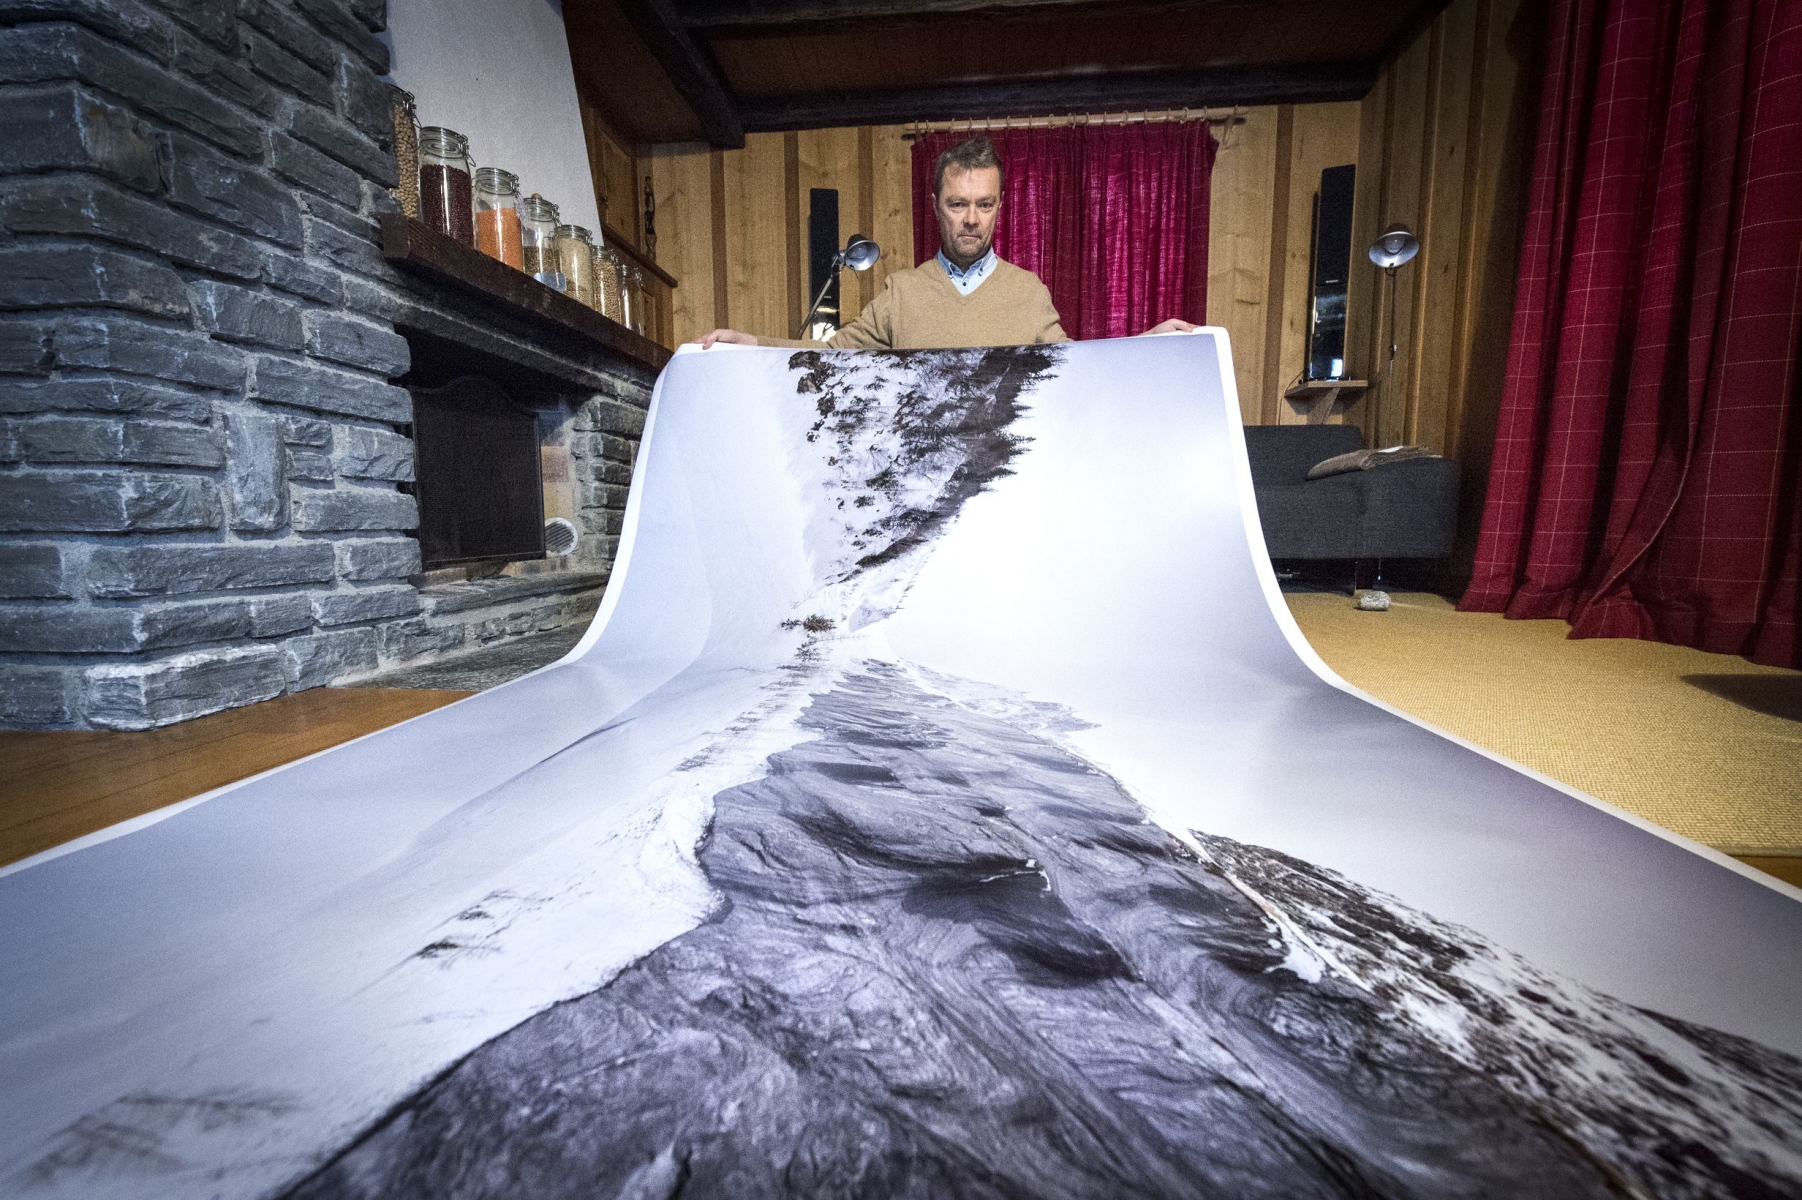 Le photographe Thomas Bouvier va exposer au Musée de l'Elysée et au Palais de Rumine à Lausanne de grands formats de photographie de montagne.